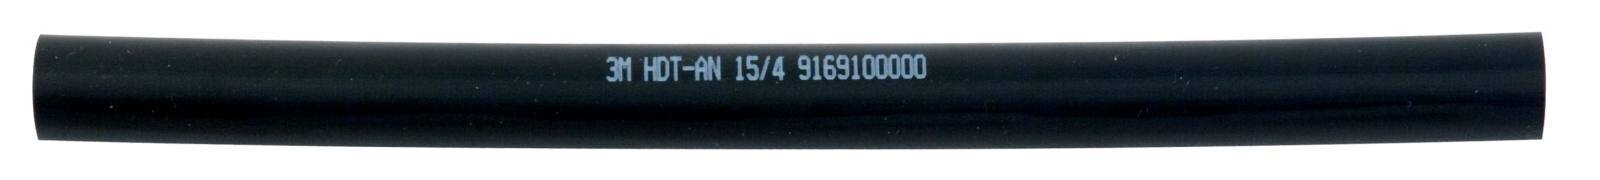 3M HDT-AN Dikwandige krimpkous met lijm, zwart, 15/4 mm, 1 m